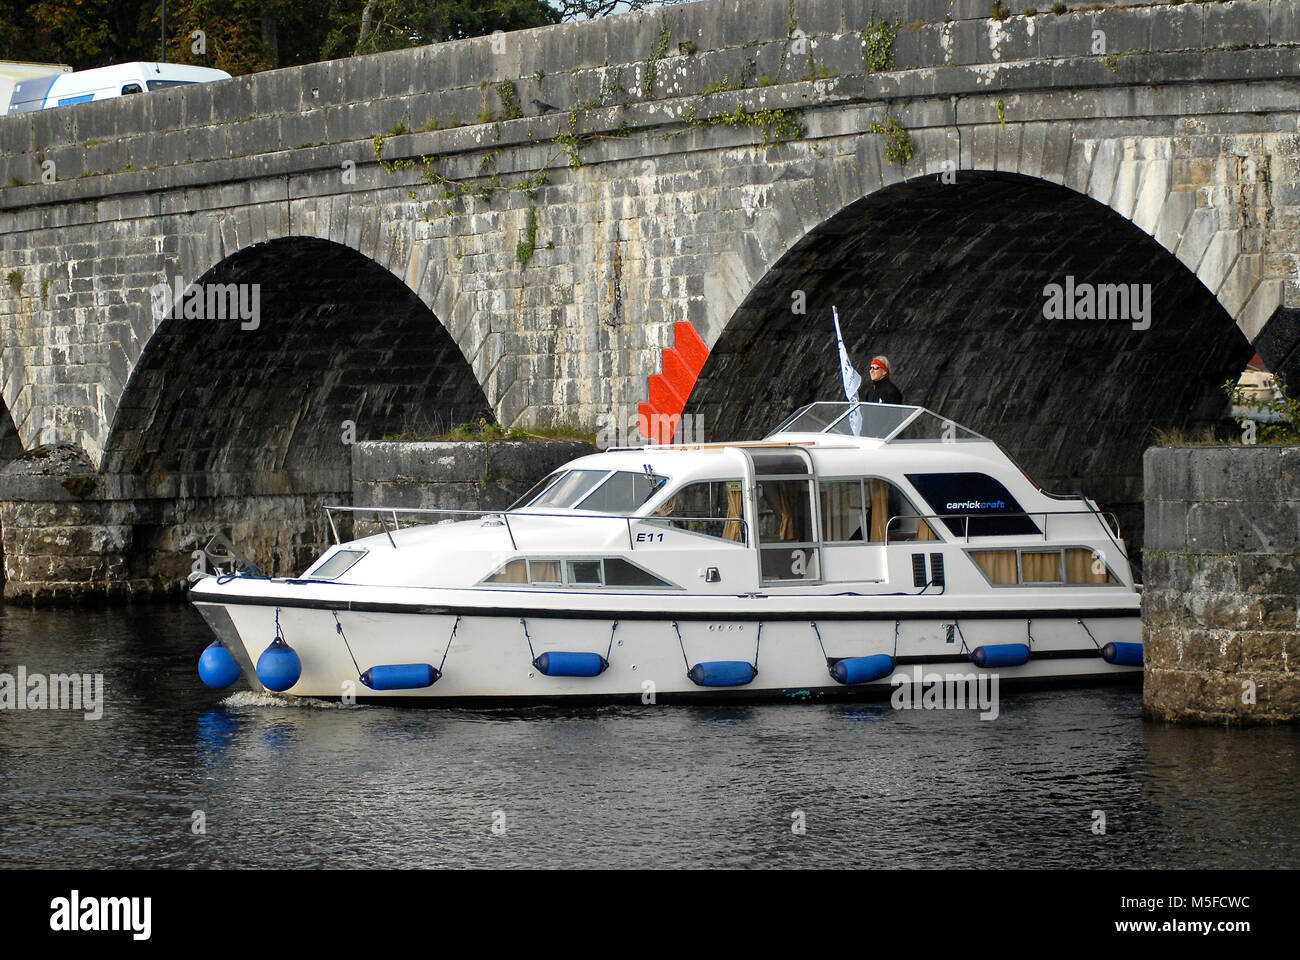 A Carrick Craft motor cruiser passa sotto il ponte di Carrick-on-Shannon, sul fiume Shannon, che collega Co Leitrim e Co Roscommon, Irlanda. Foto Stock